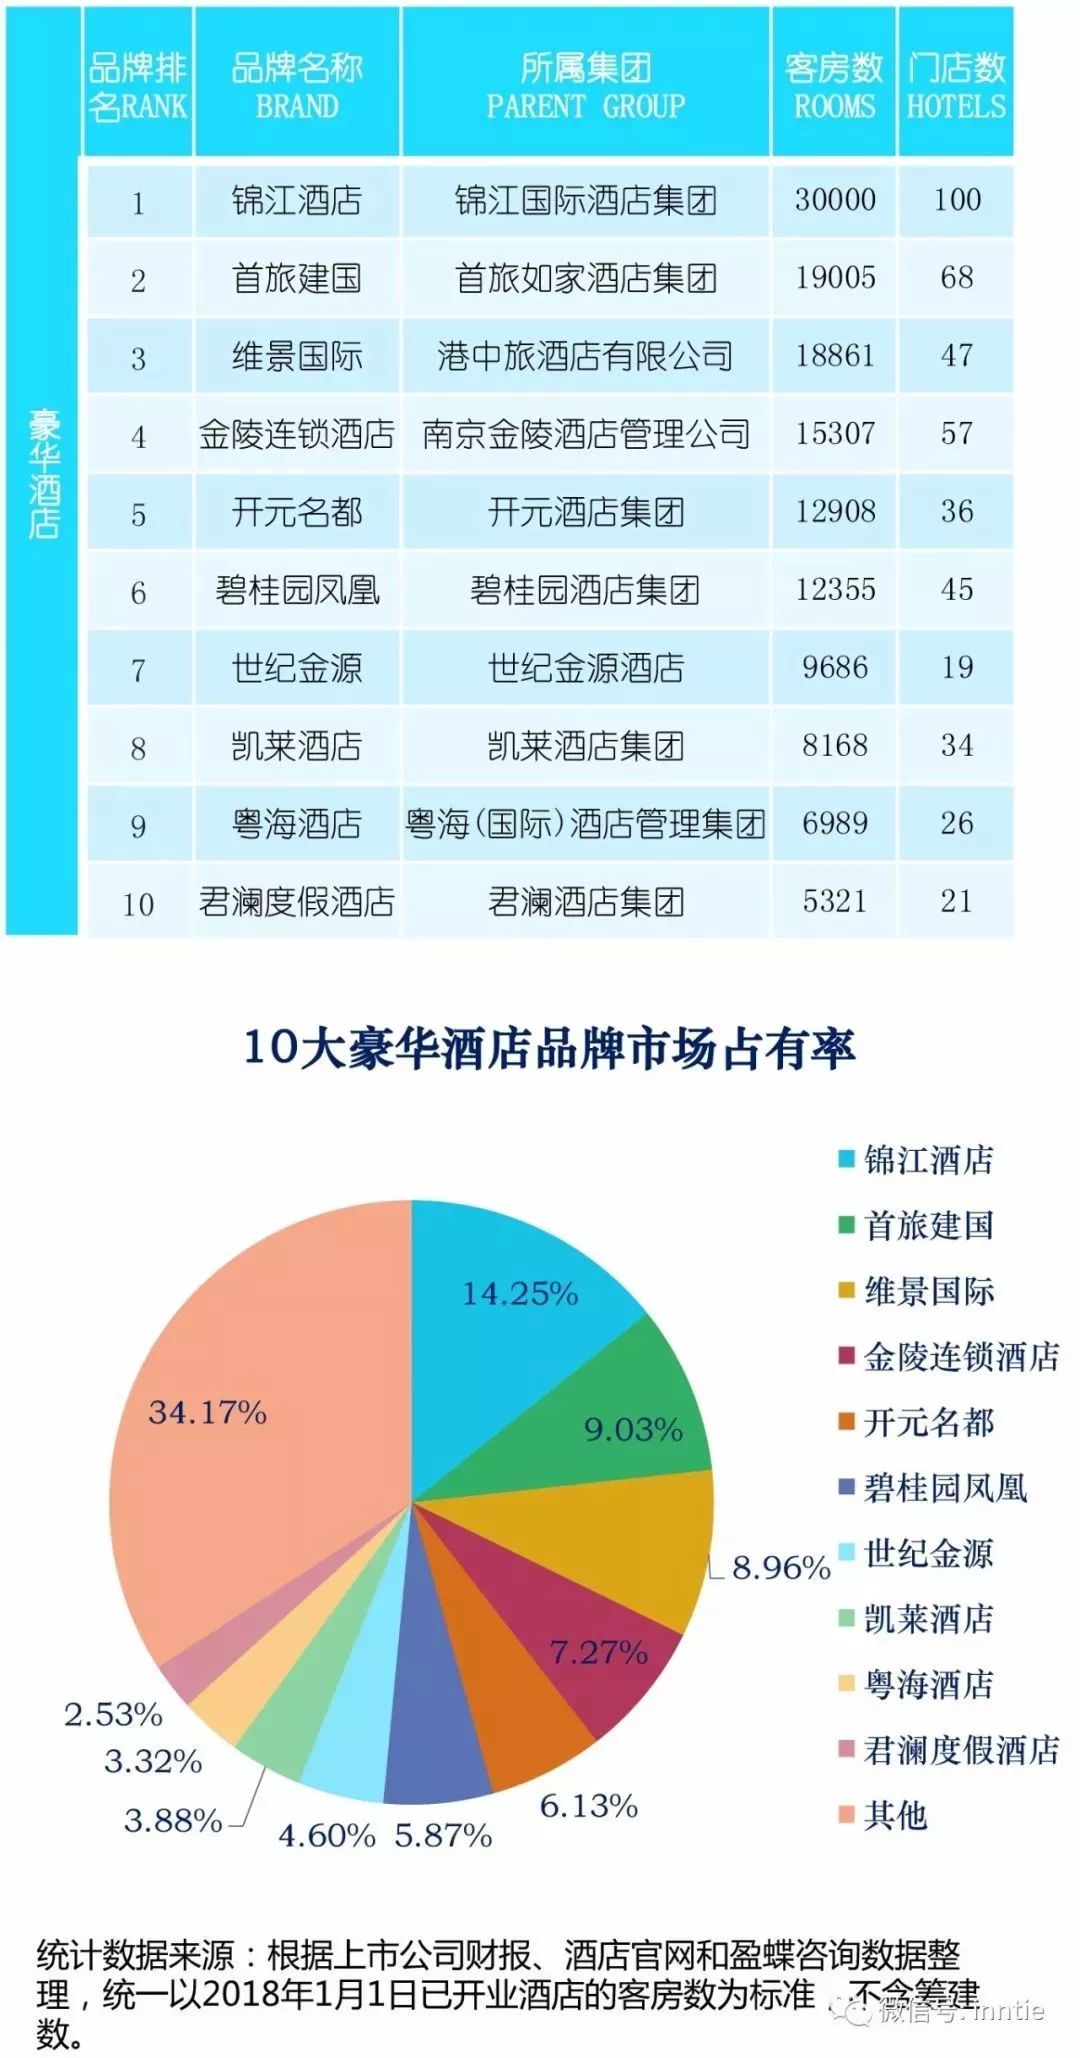 2018年 排行榜_2018中国酒店排行榜